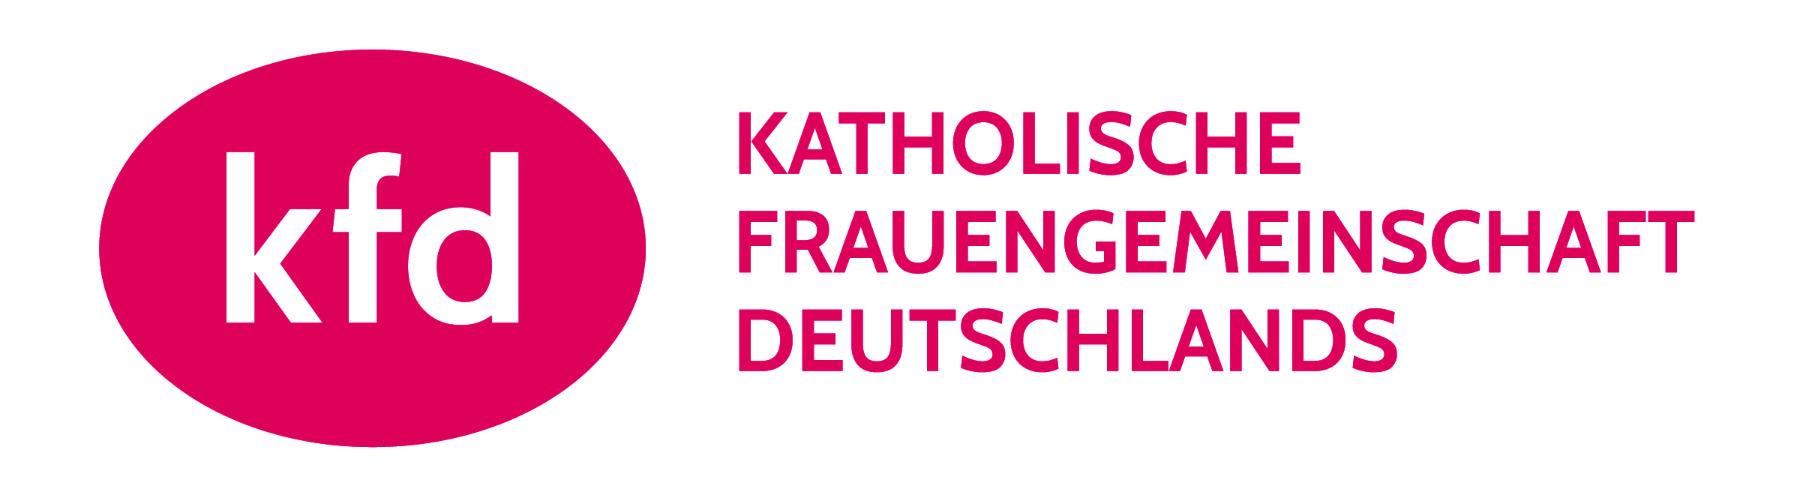 kfd_Logo_Purpur_sRGB (c) kfd Bundesverband